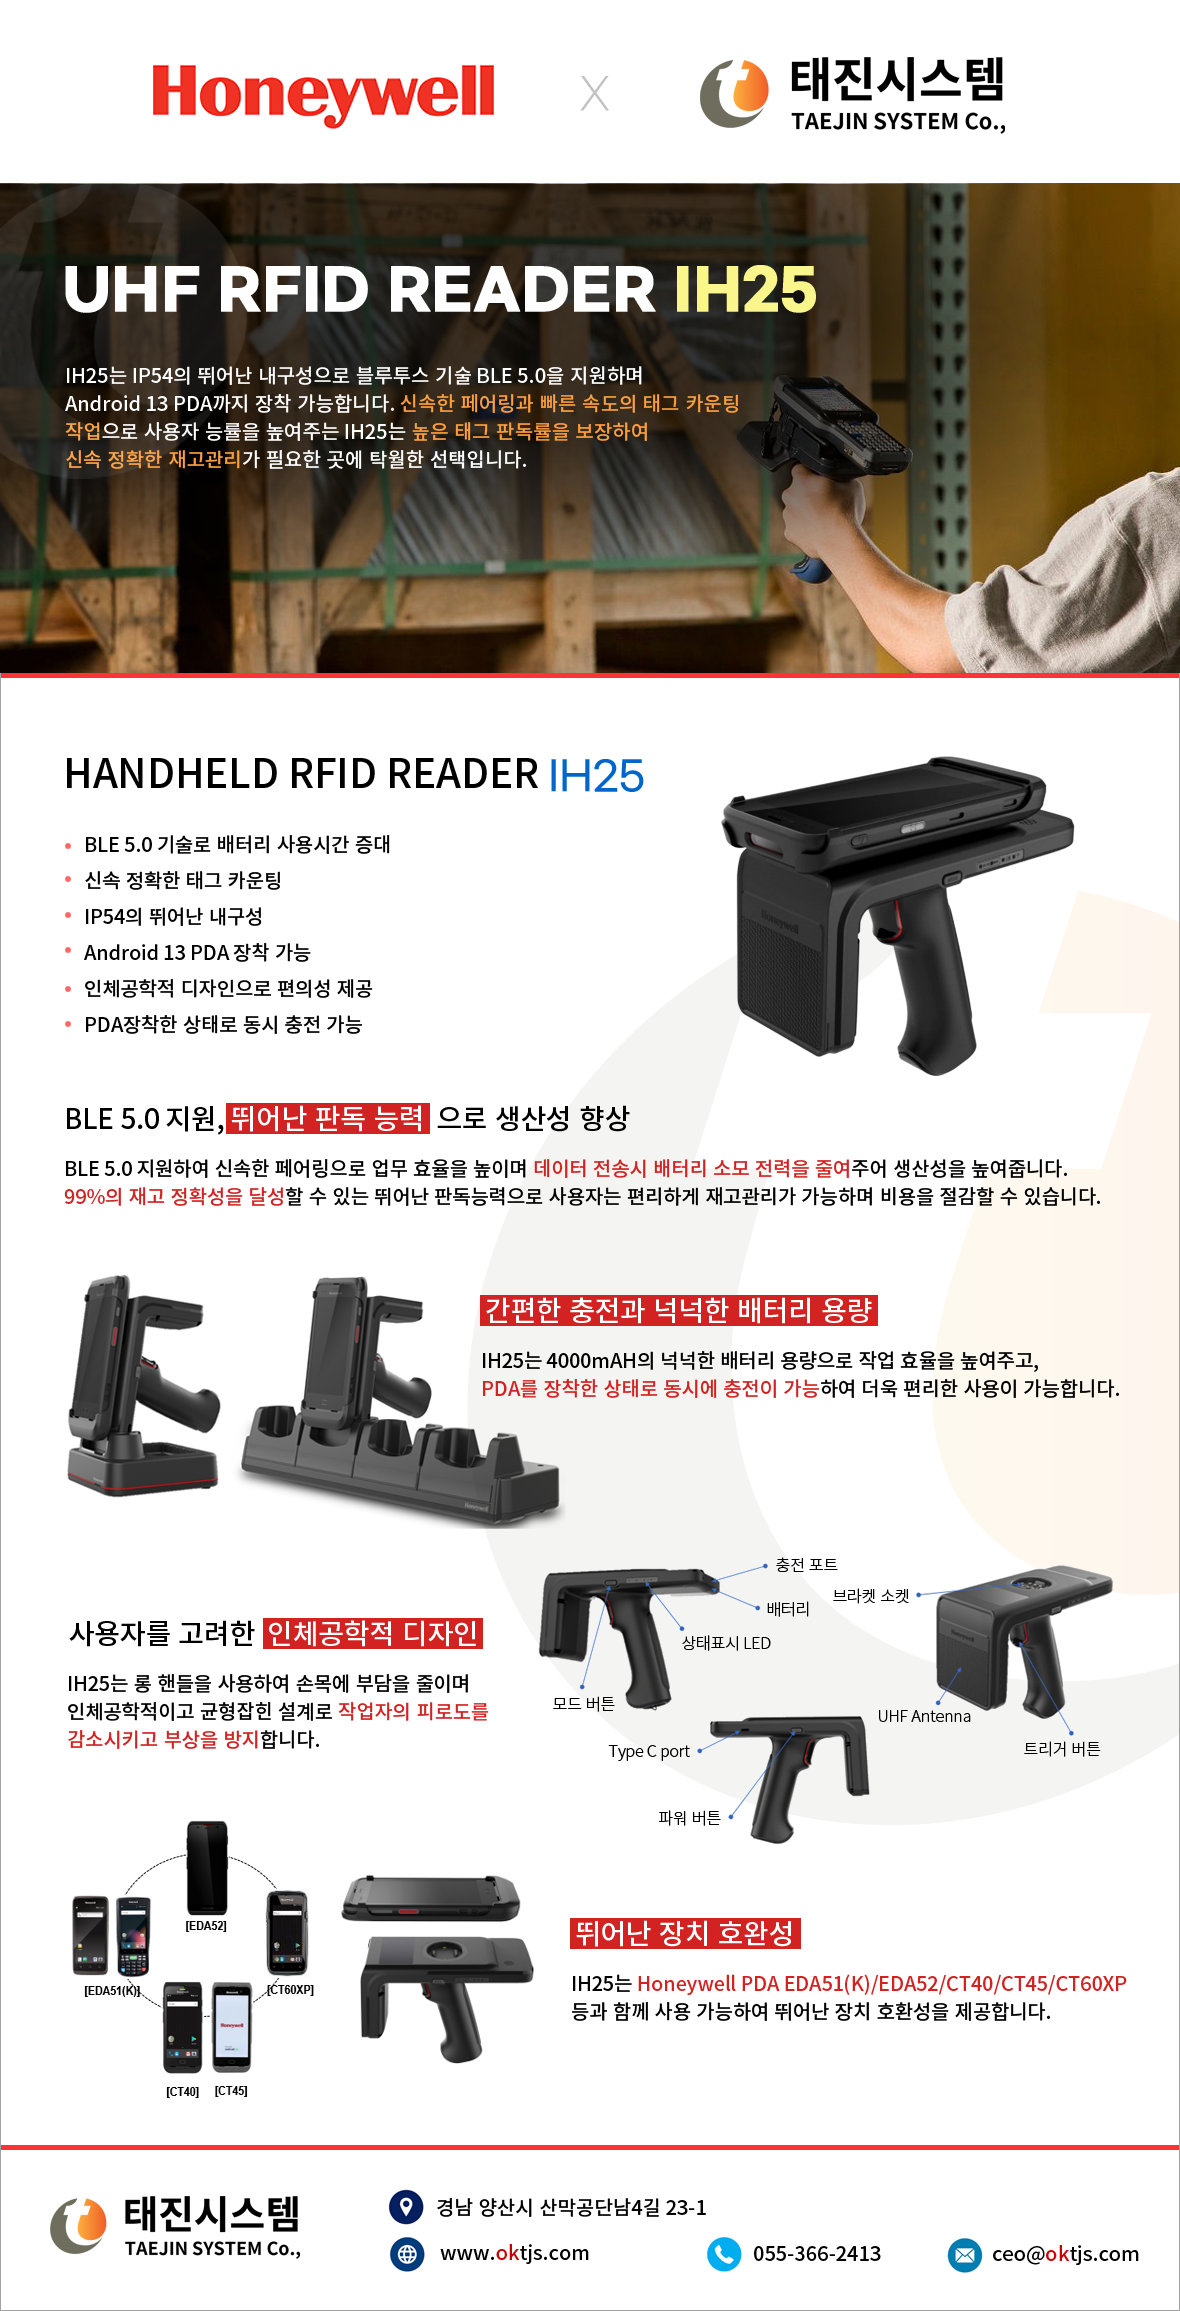 하니웰 RFID READER IH25 소개